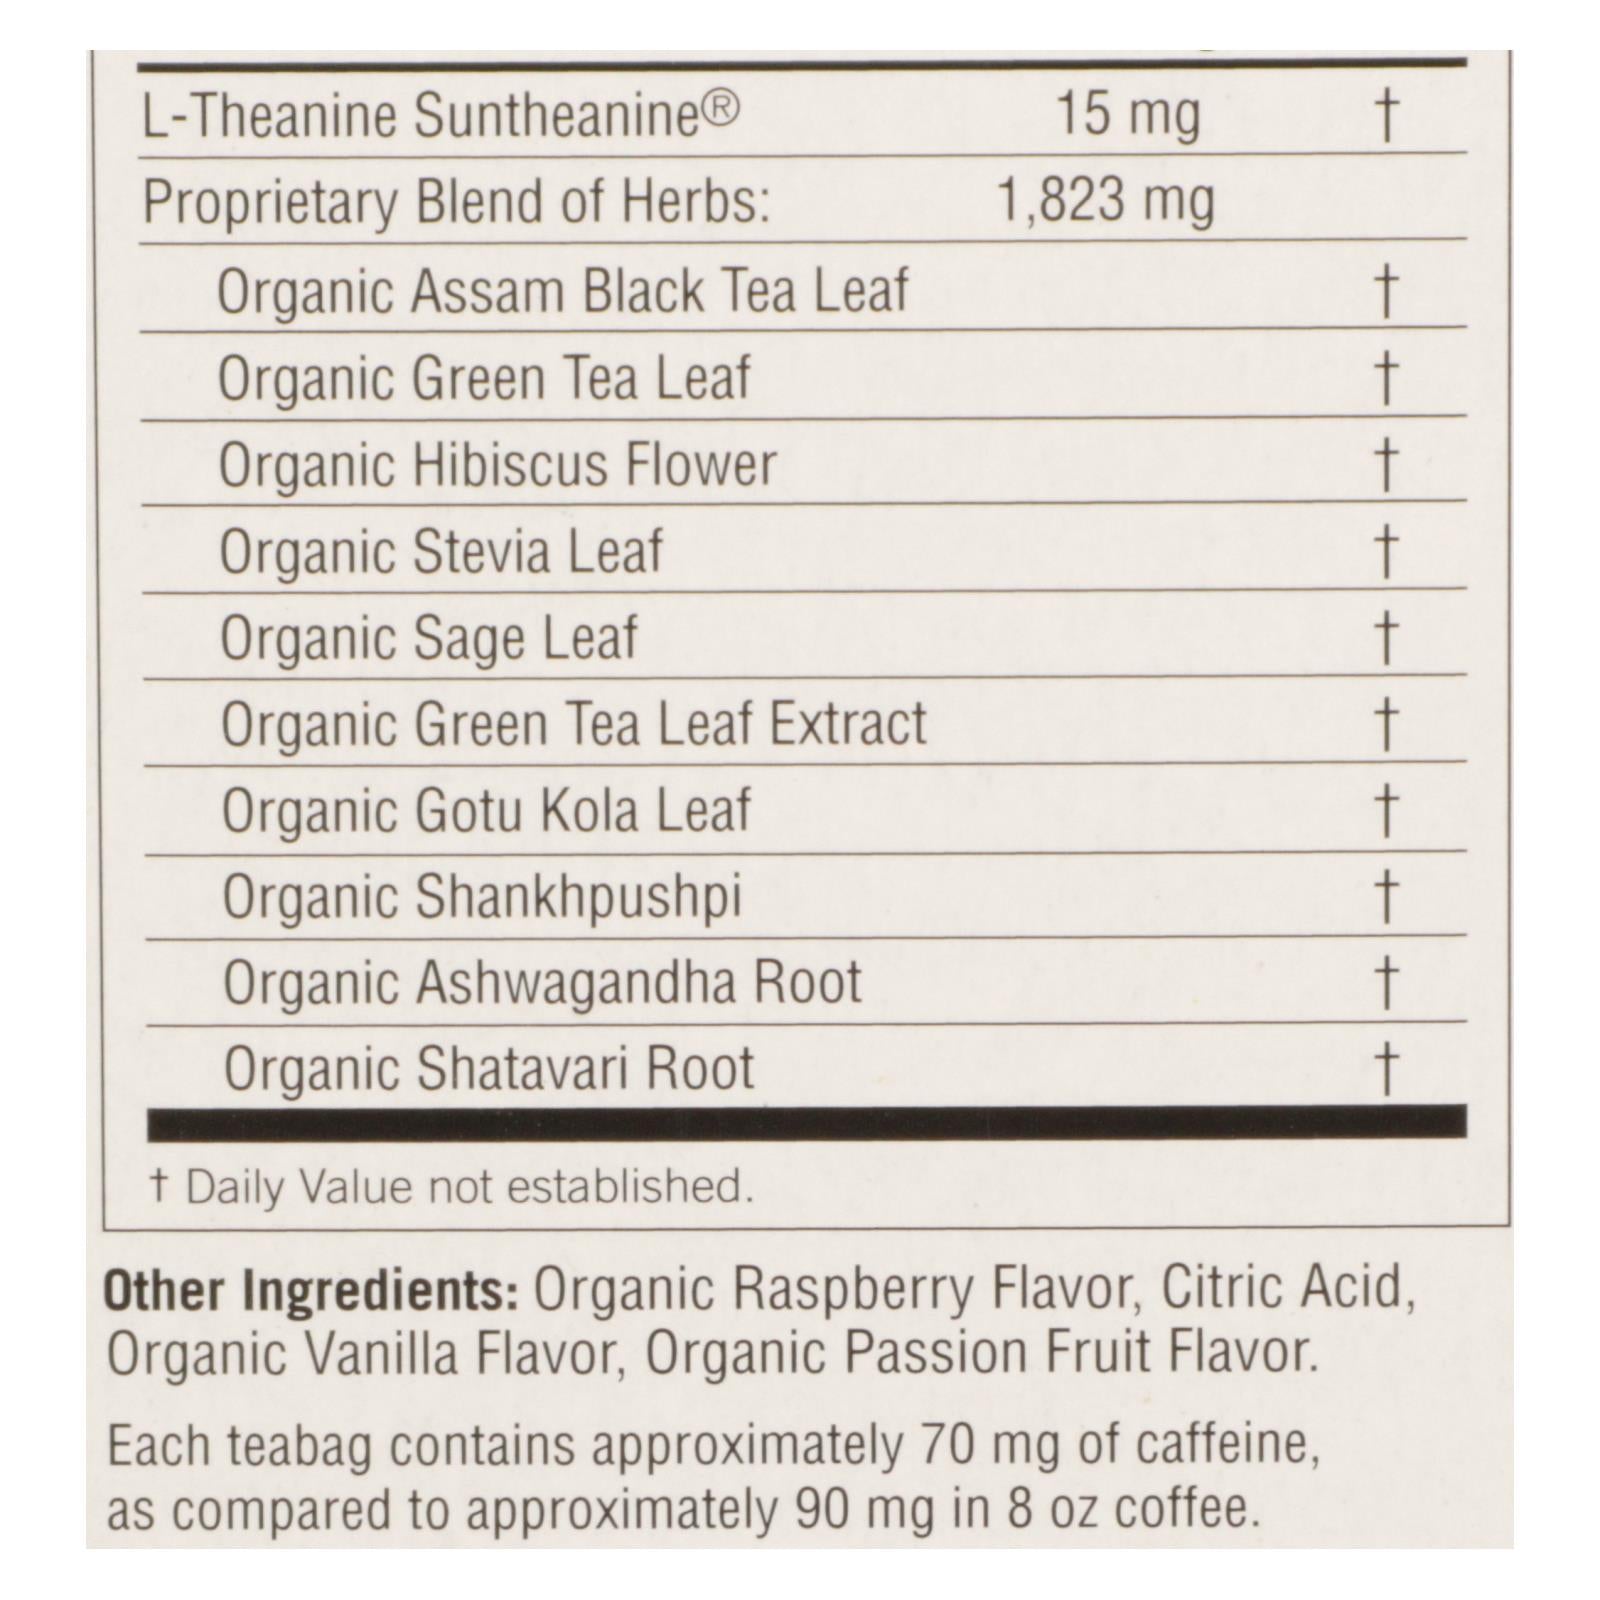 Yogi Perfect Energy Herbal Tea Raspberry Passion - 16 Tea Bags - Case Of 6